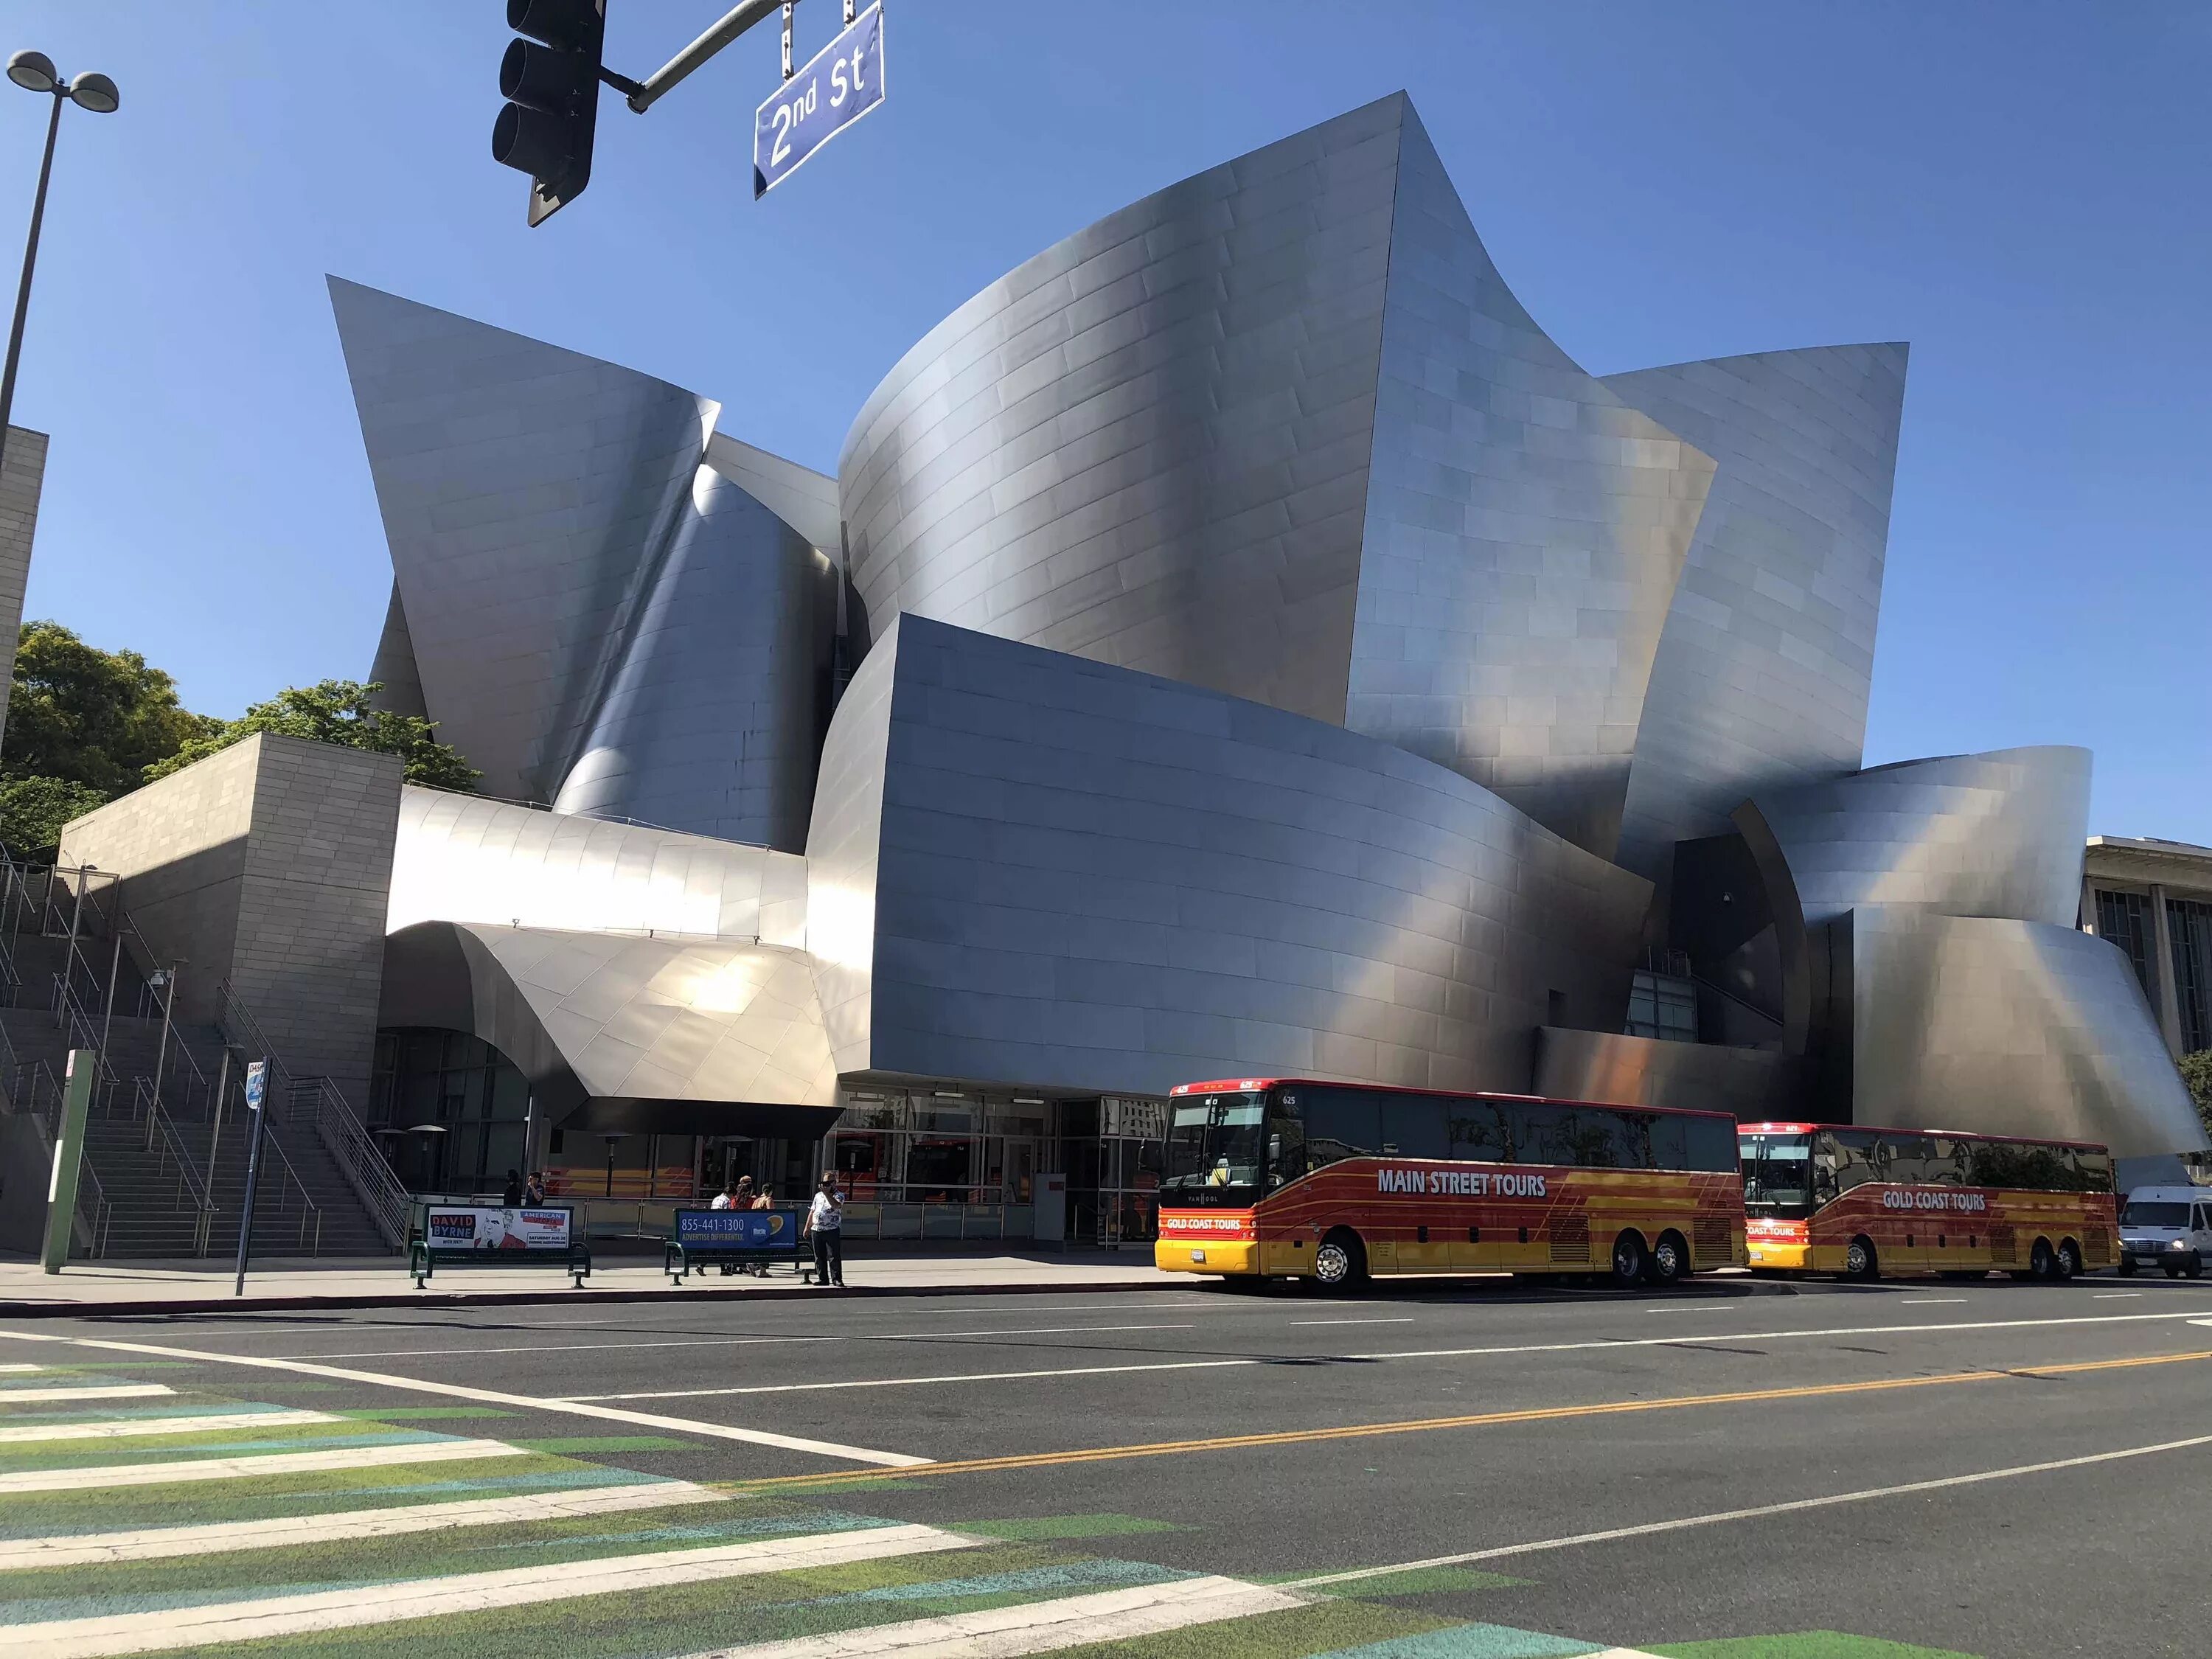 Концертный зал диснея. Концертный зал «Дисней» в Лос-Анджелес. Концертный зал Уолта Диснея в Лос-Анджелесе. Фрэнк Гери концертный зал Уолта Диснея. Концертный зал Уолта Диснея в Лос-Анджелесе архитектура.